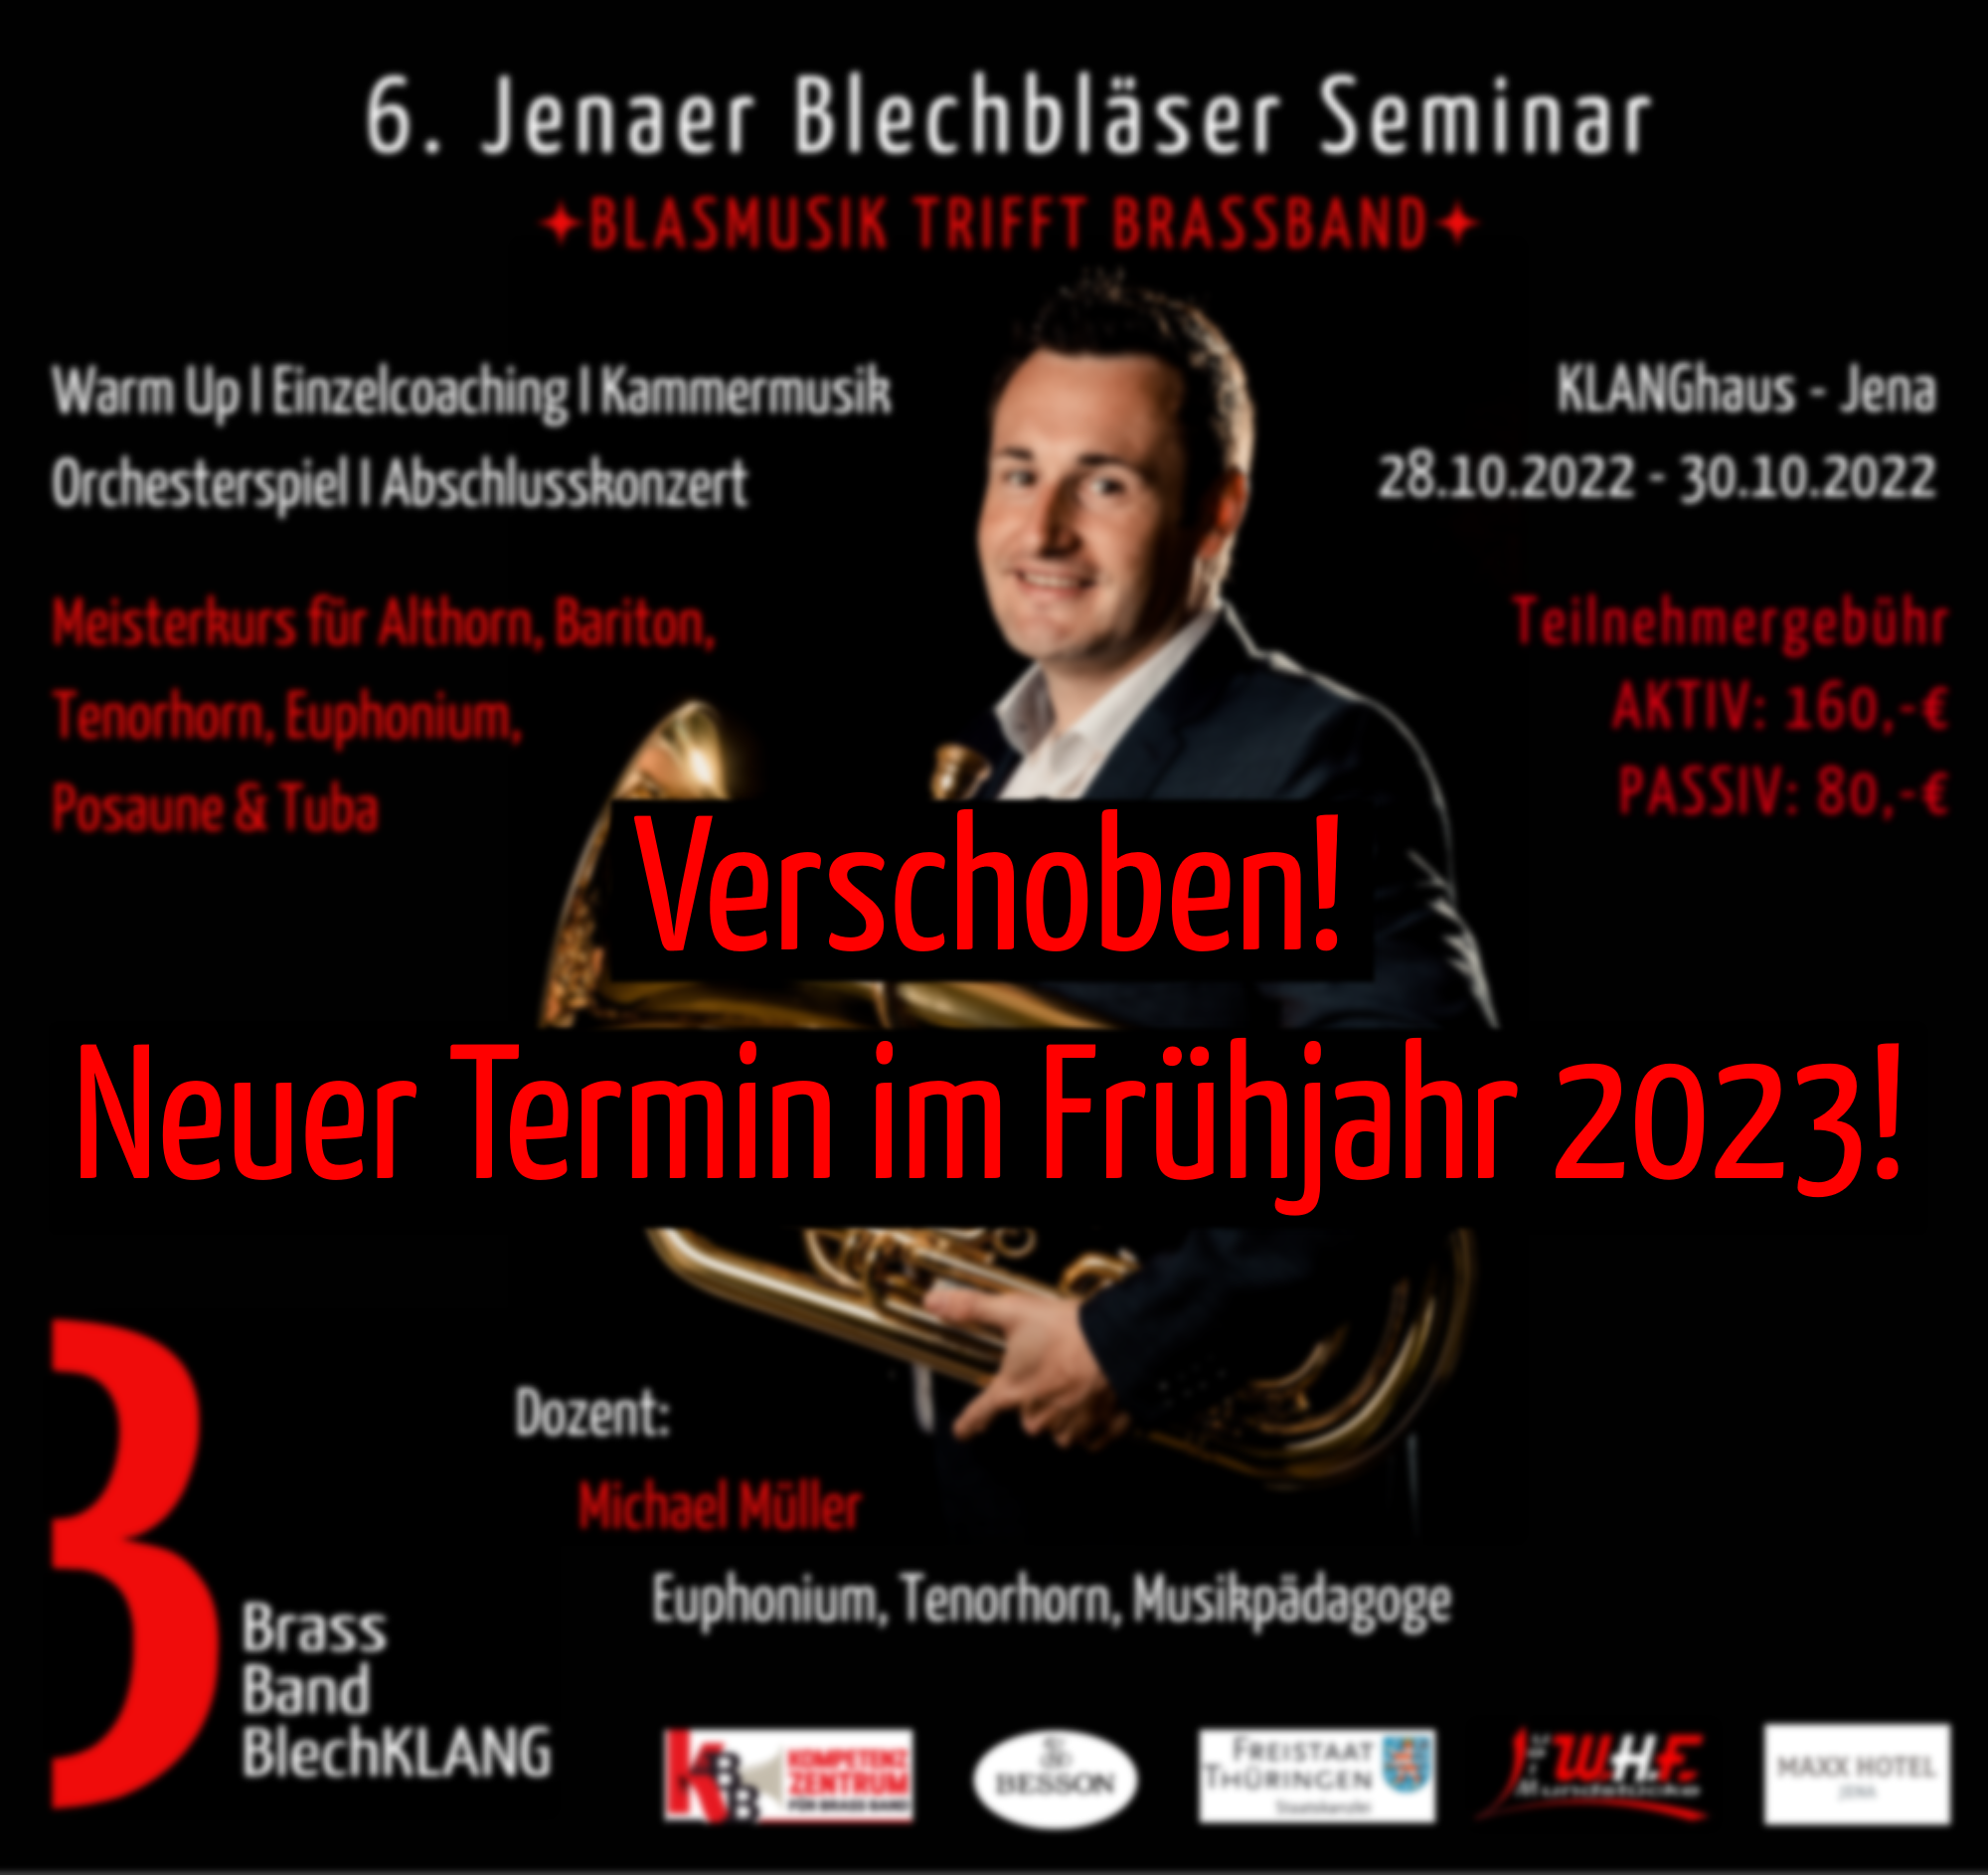 6. Jenaer Blechbläser Seminar mit Michael Müller 2022 - verschoben